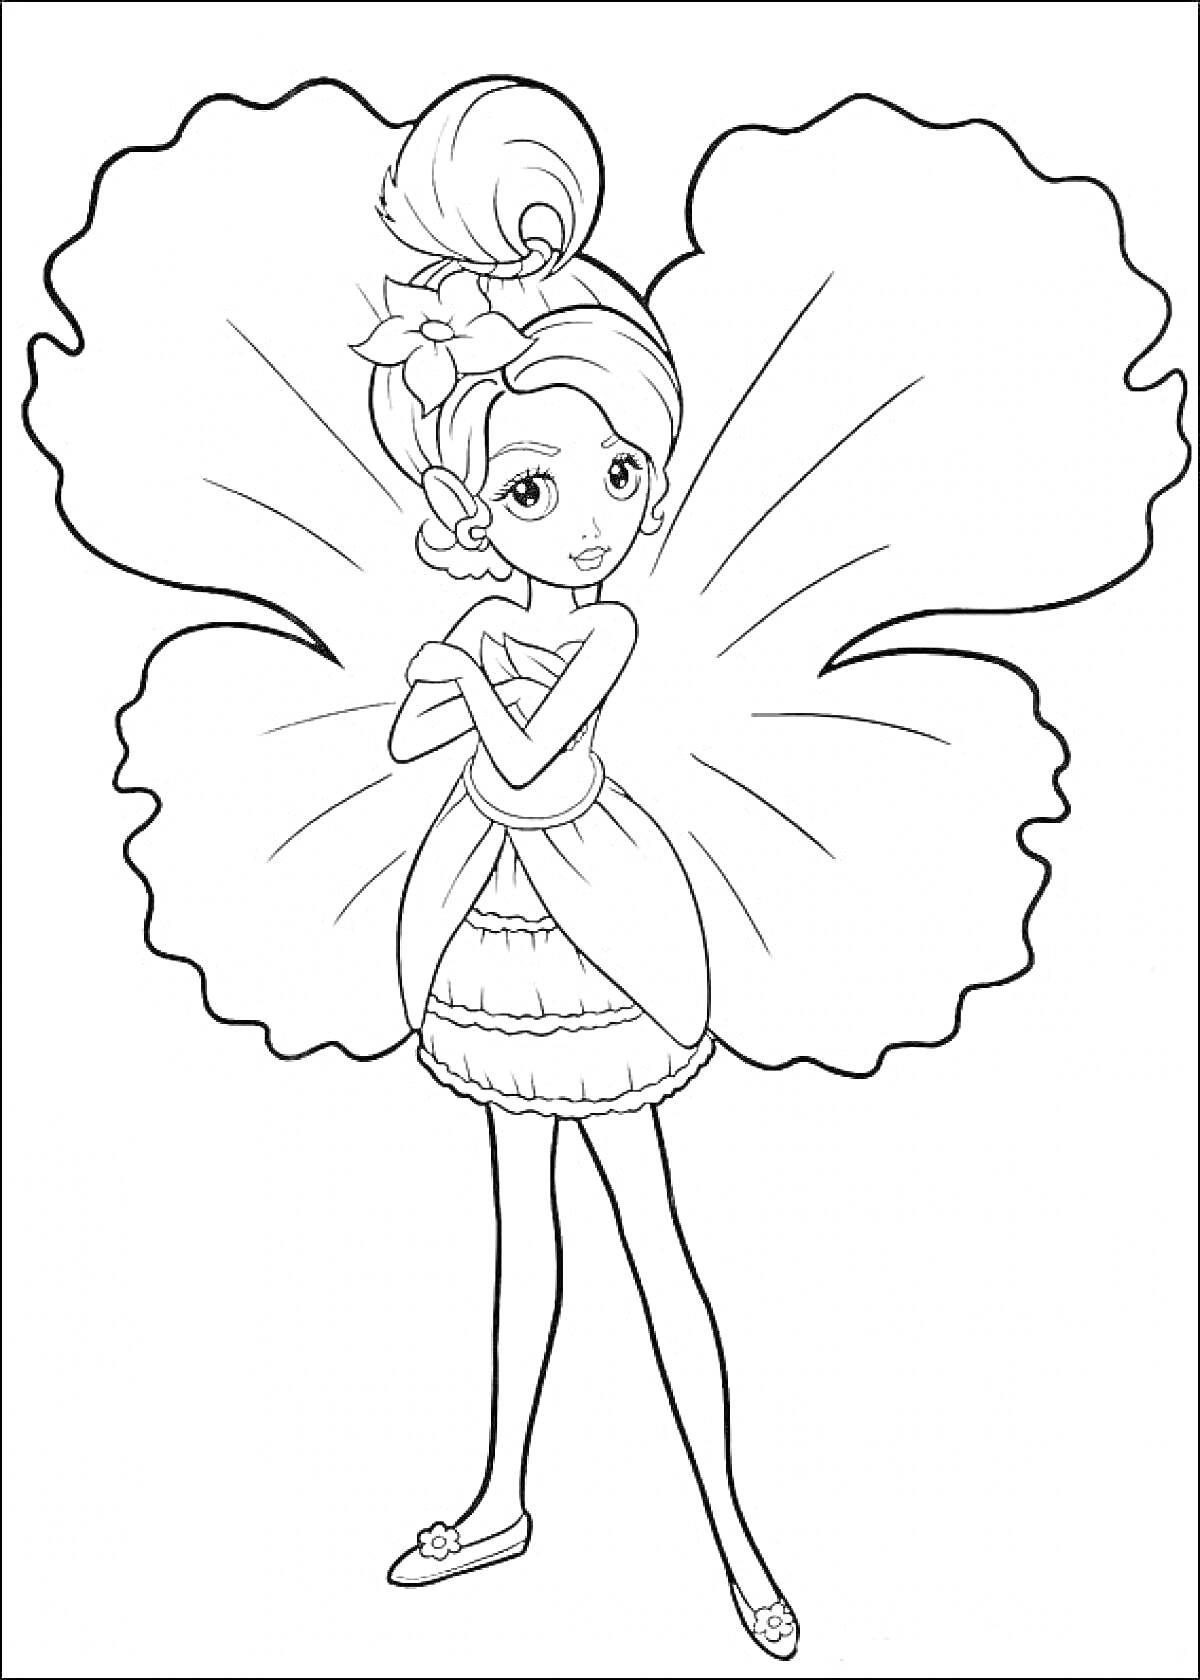 Раскраска Барби Дюймовочка с большими цветочными крыльями на спине, стоит с переплетёнными руками.